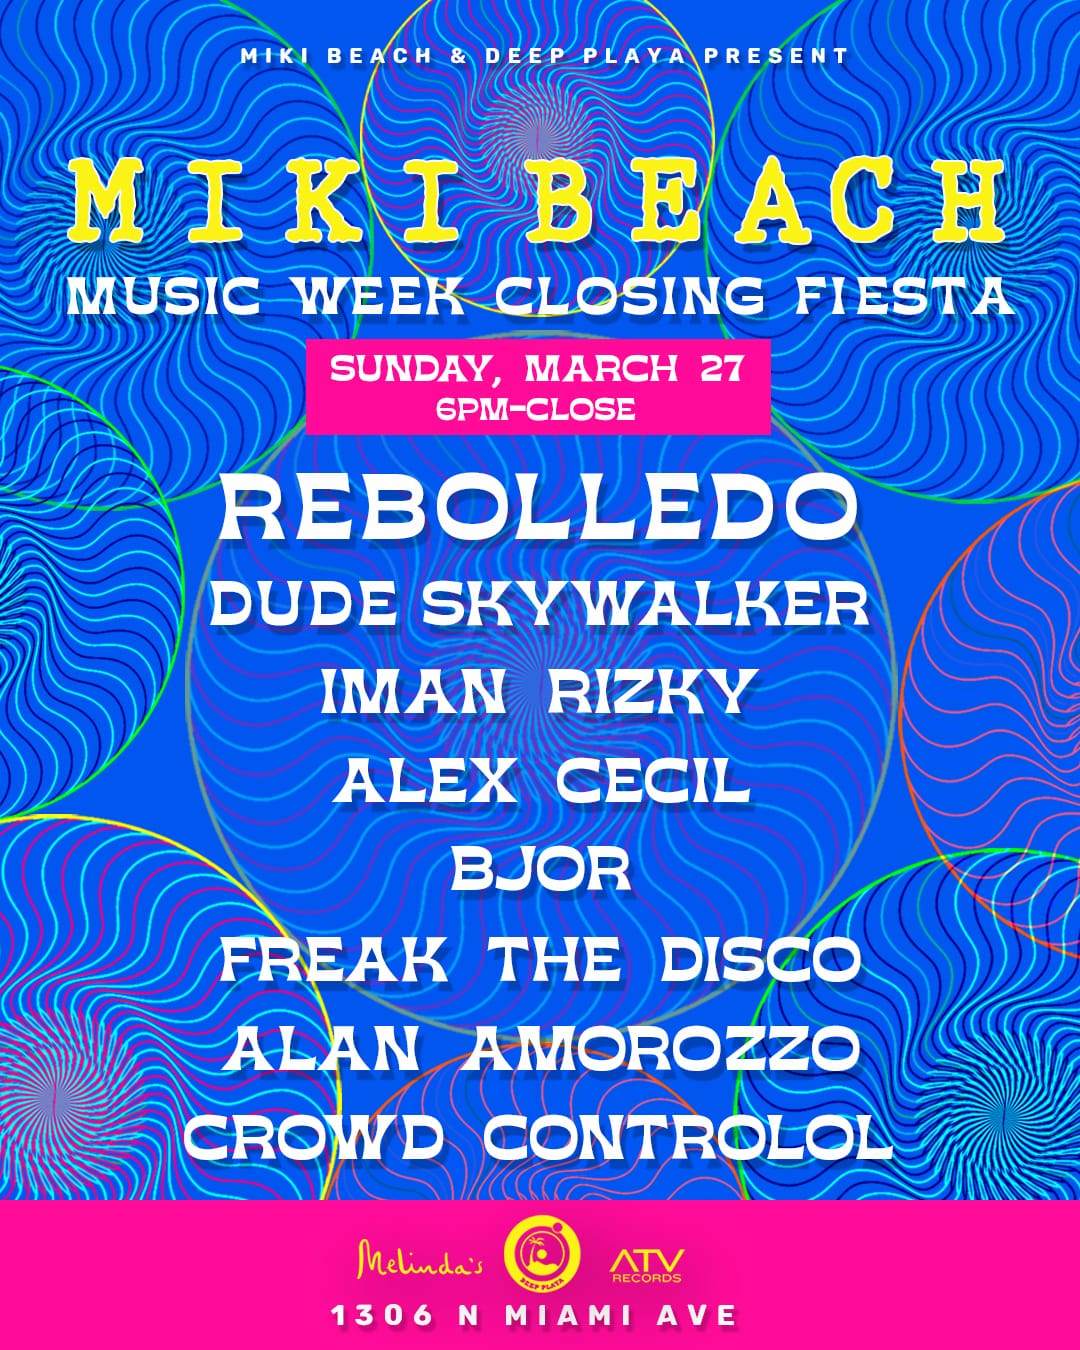 Miki Beach MMW Closing Fiesta w/ Rebolledo + more - フライヤー裏